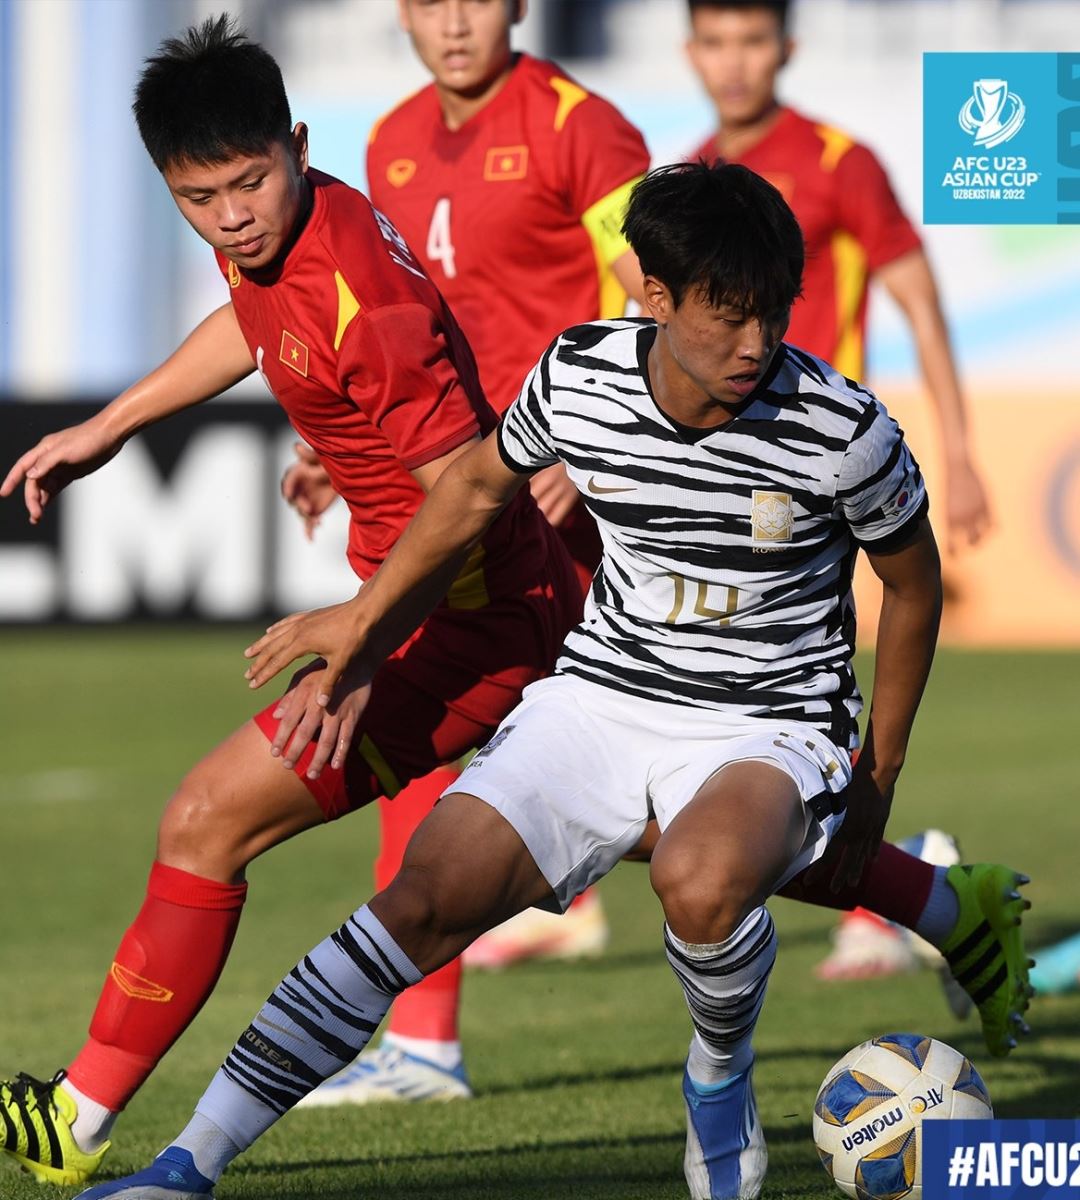 U23 Hàn Quốc là một trong những đối thủ đầy thử thách cho đội tuyển U23 Việt Nam. Các trận đấu giữa hai đội này luôn đầy kịch tính và nỗ lực tuyệt vời. Hãy cùng đến và xem ai sẽ chiến thắng trong những trận đấu tuyệt vời này.